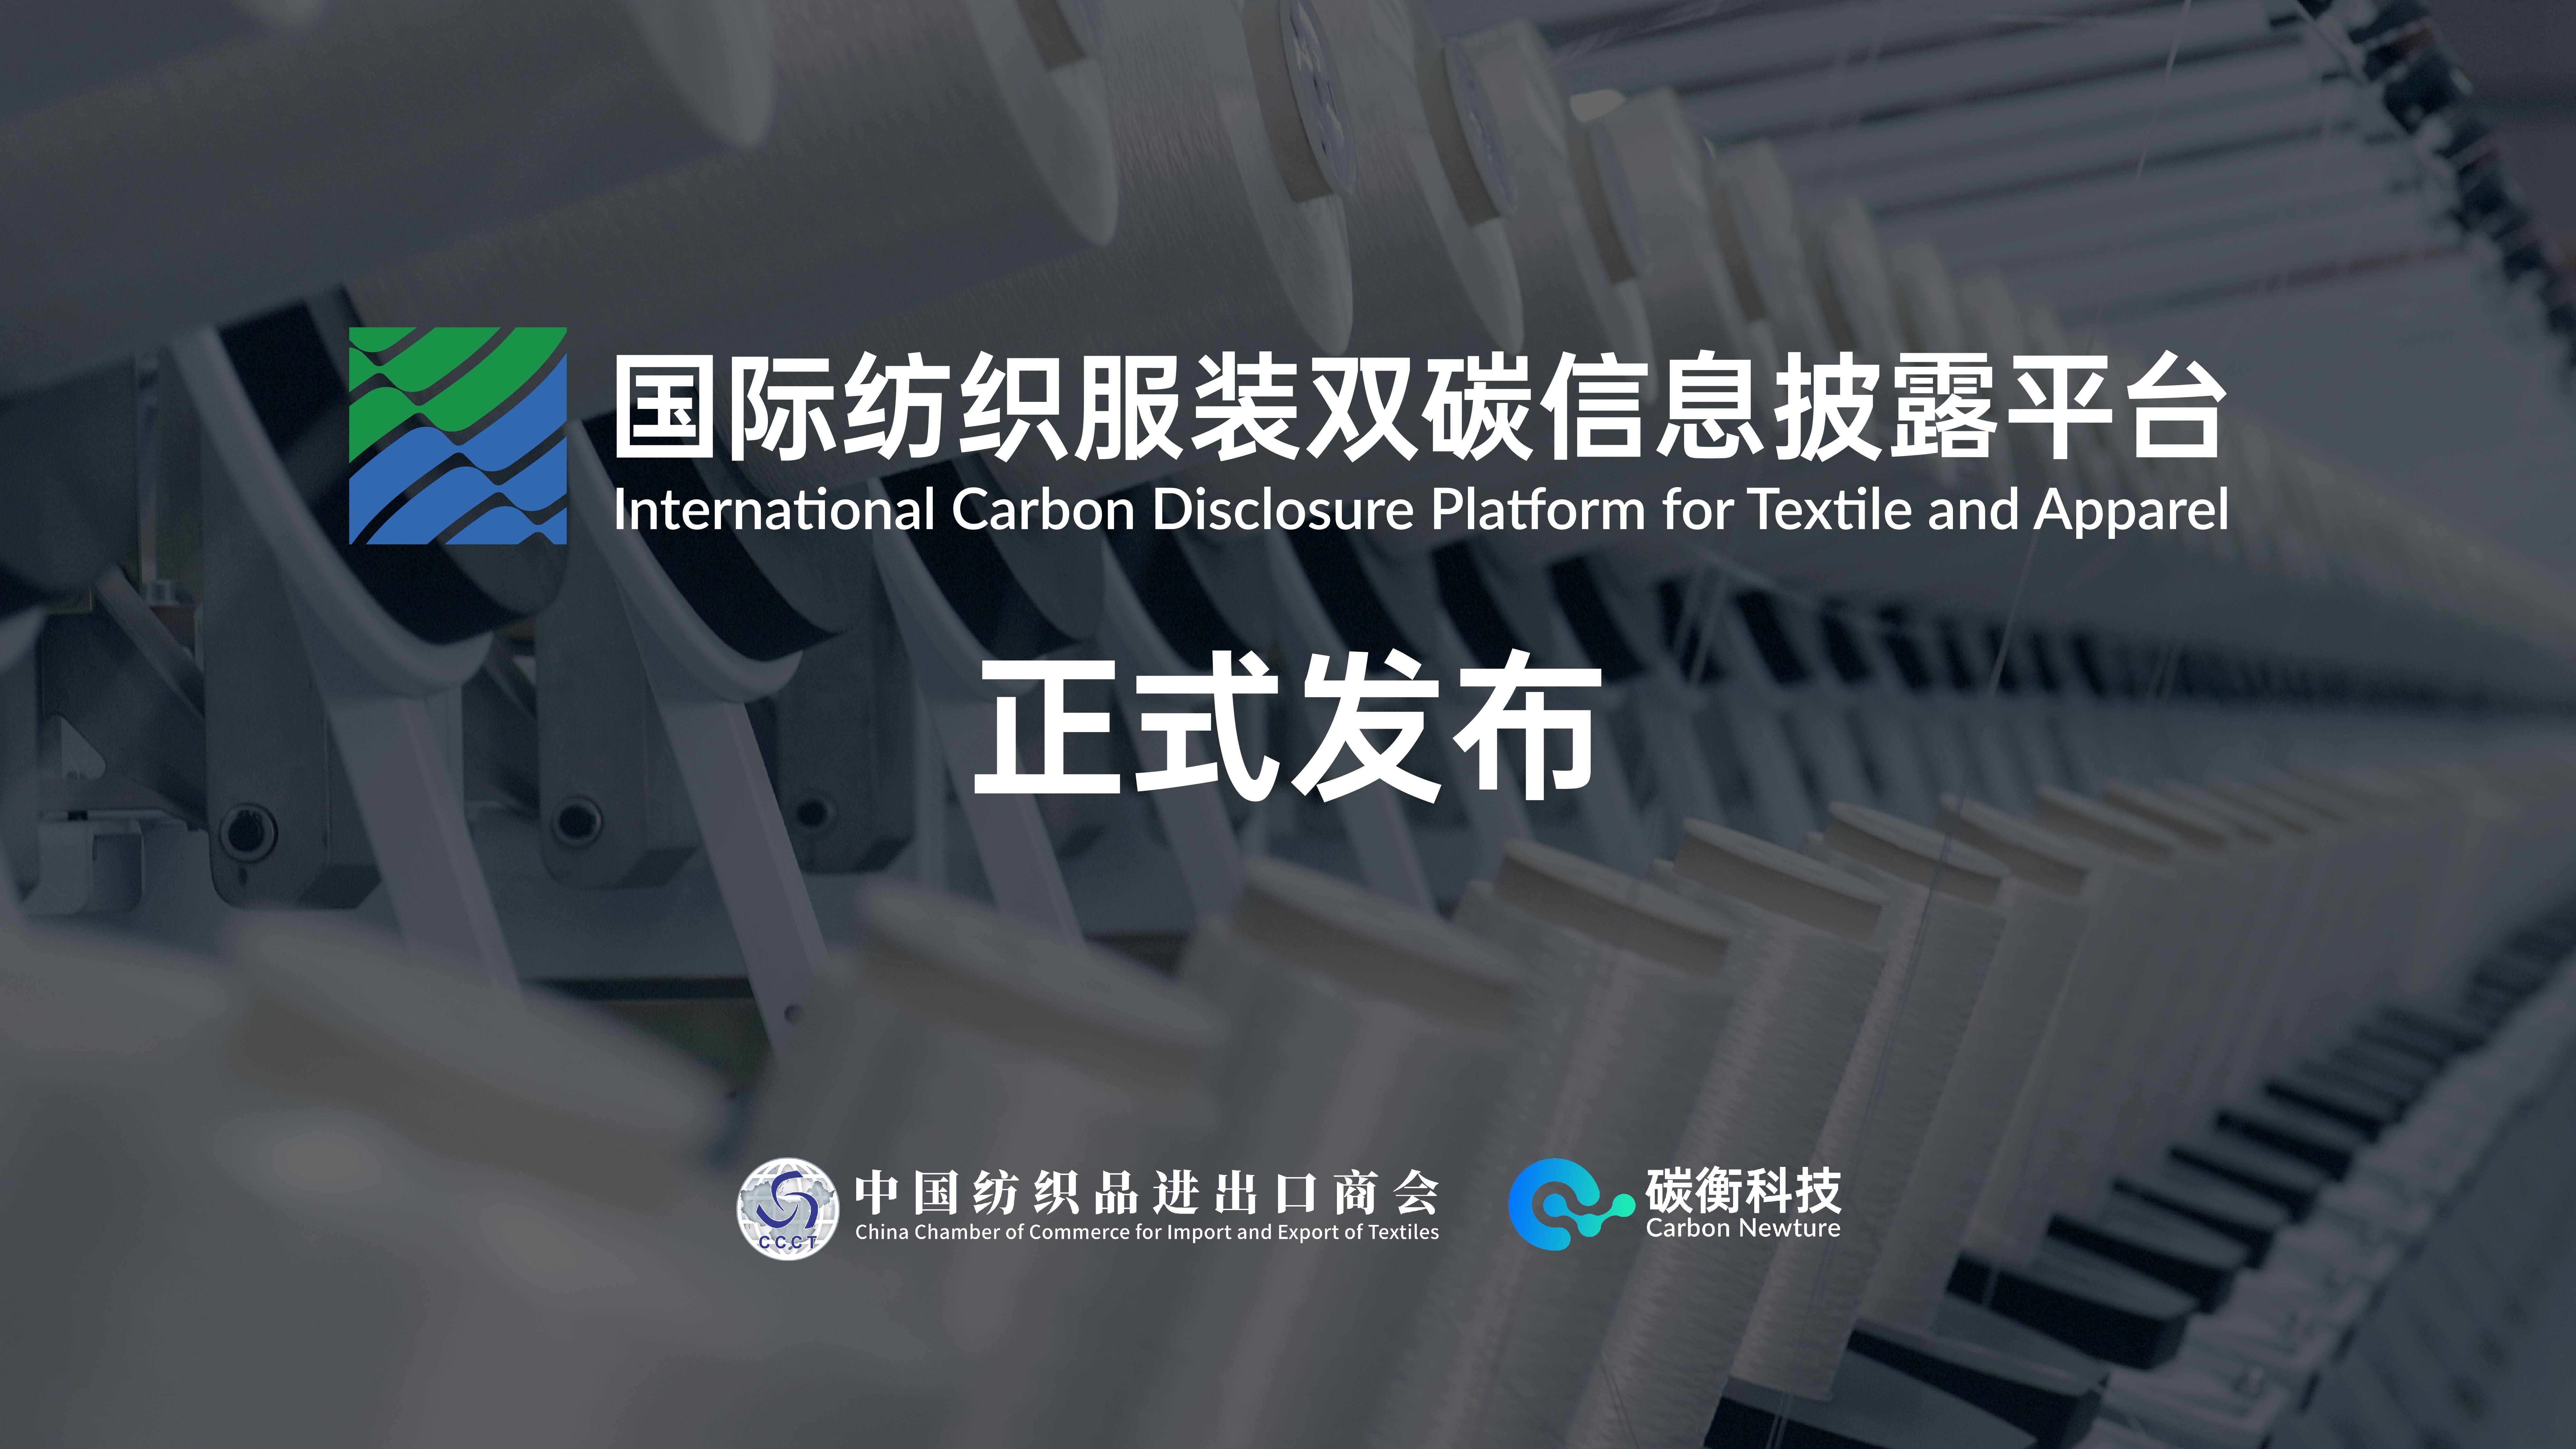 重磅丨国际纺织服装双碳信息披露平台发布插图